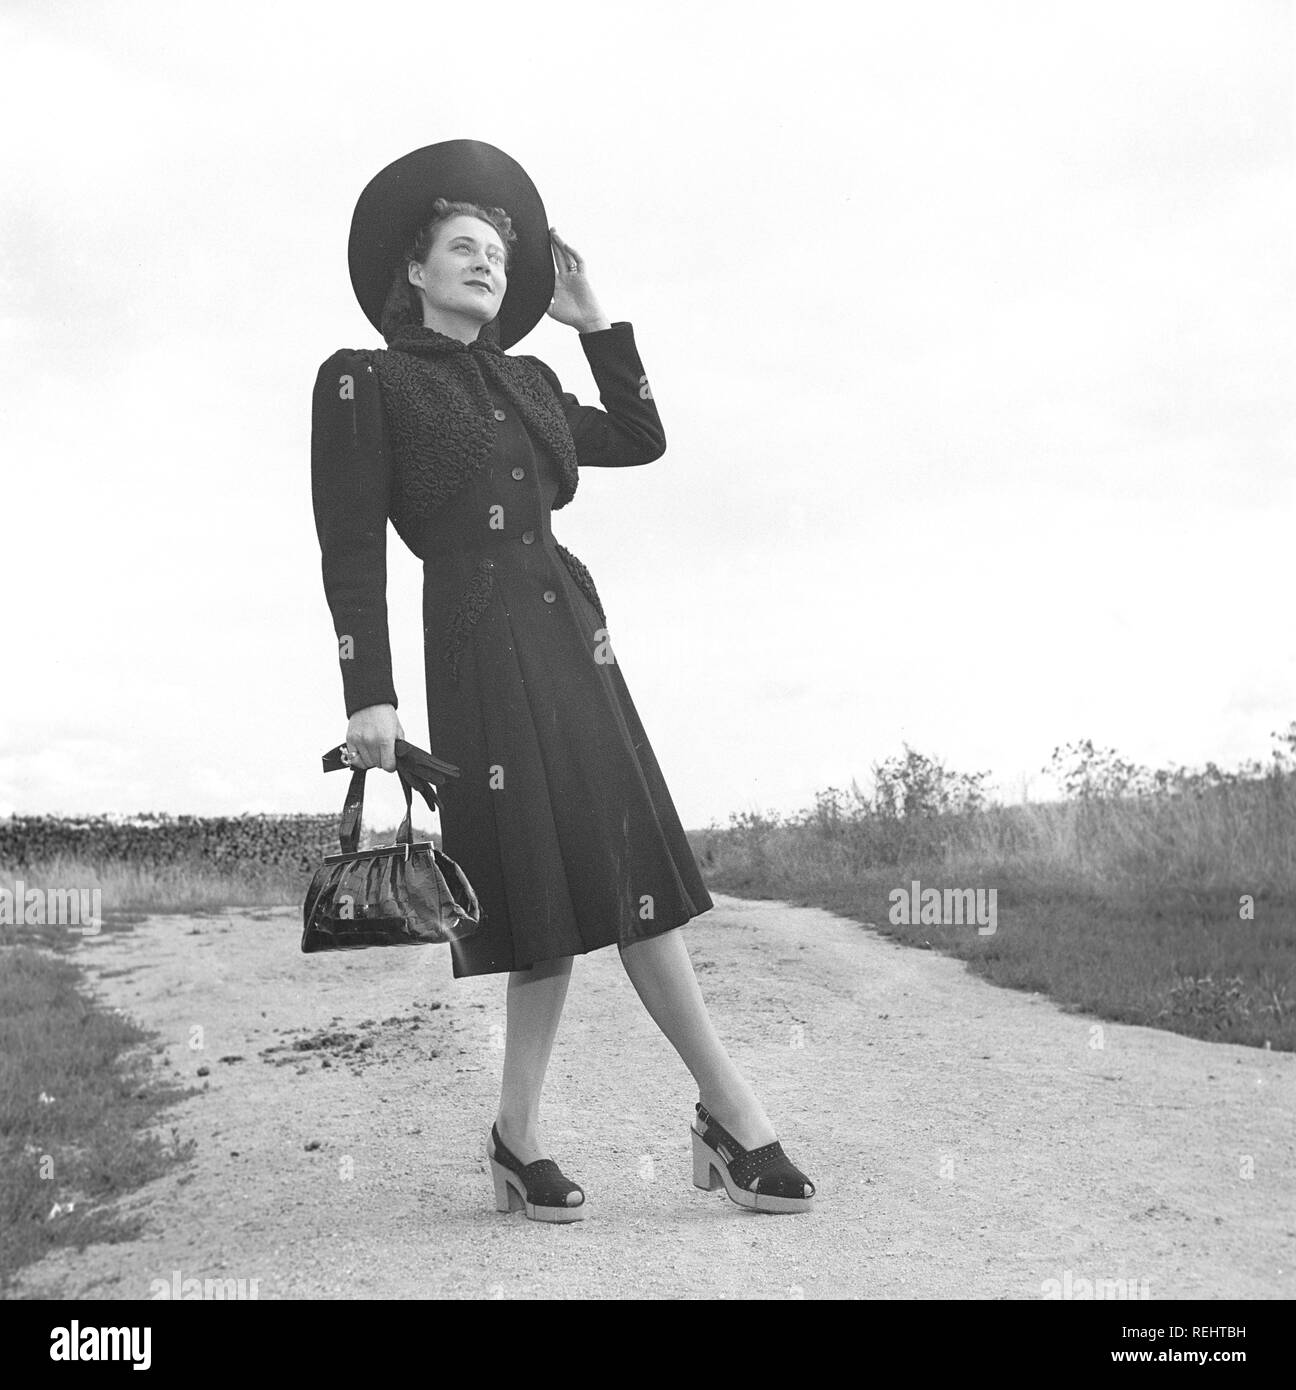 La mode féminine dans les années 40. Une jeune femme en robe typique des années  40 avec chapeau assorti, chaussures, gants et sac à main. Kristoffersson  Photo Ref V77-6. Suède 1947 Photo Stock - Alamy